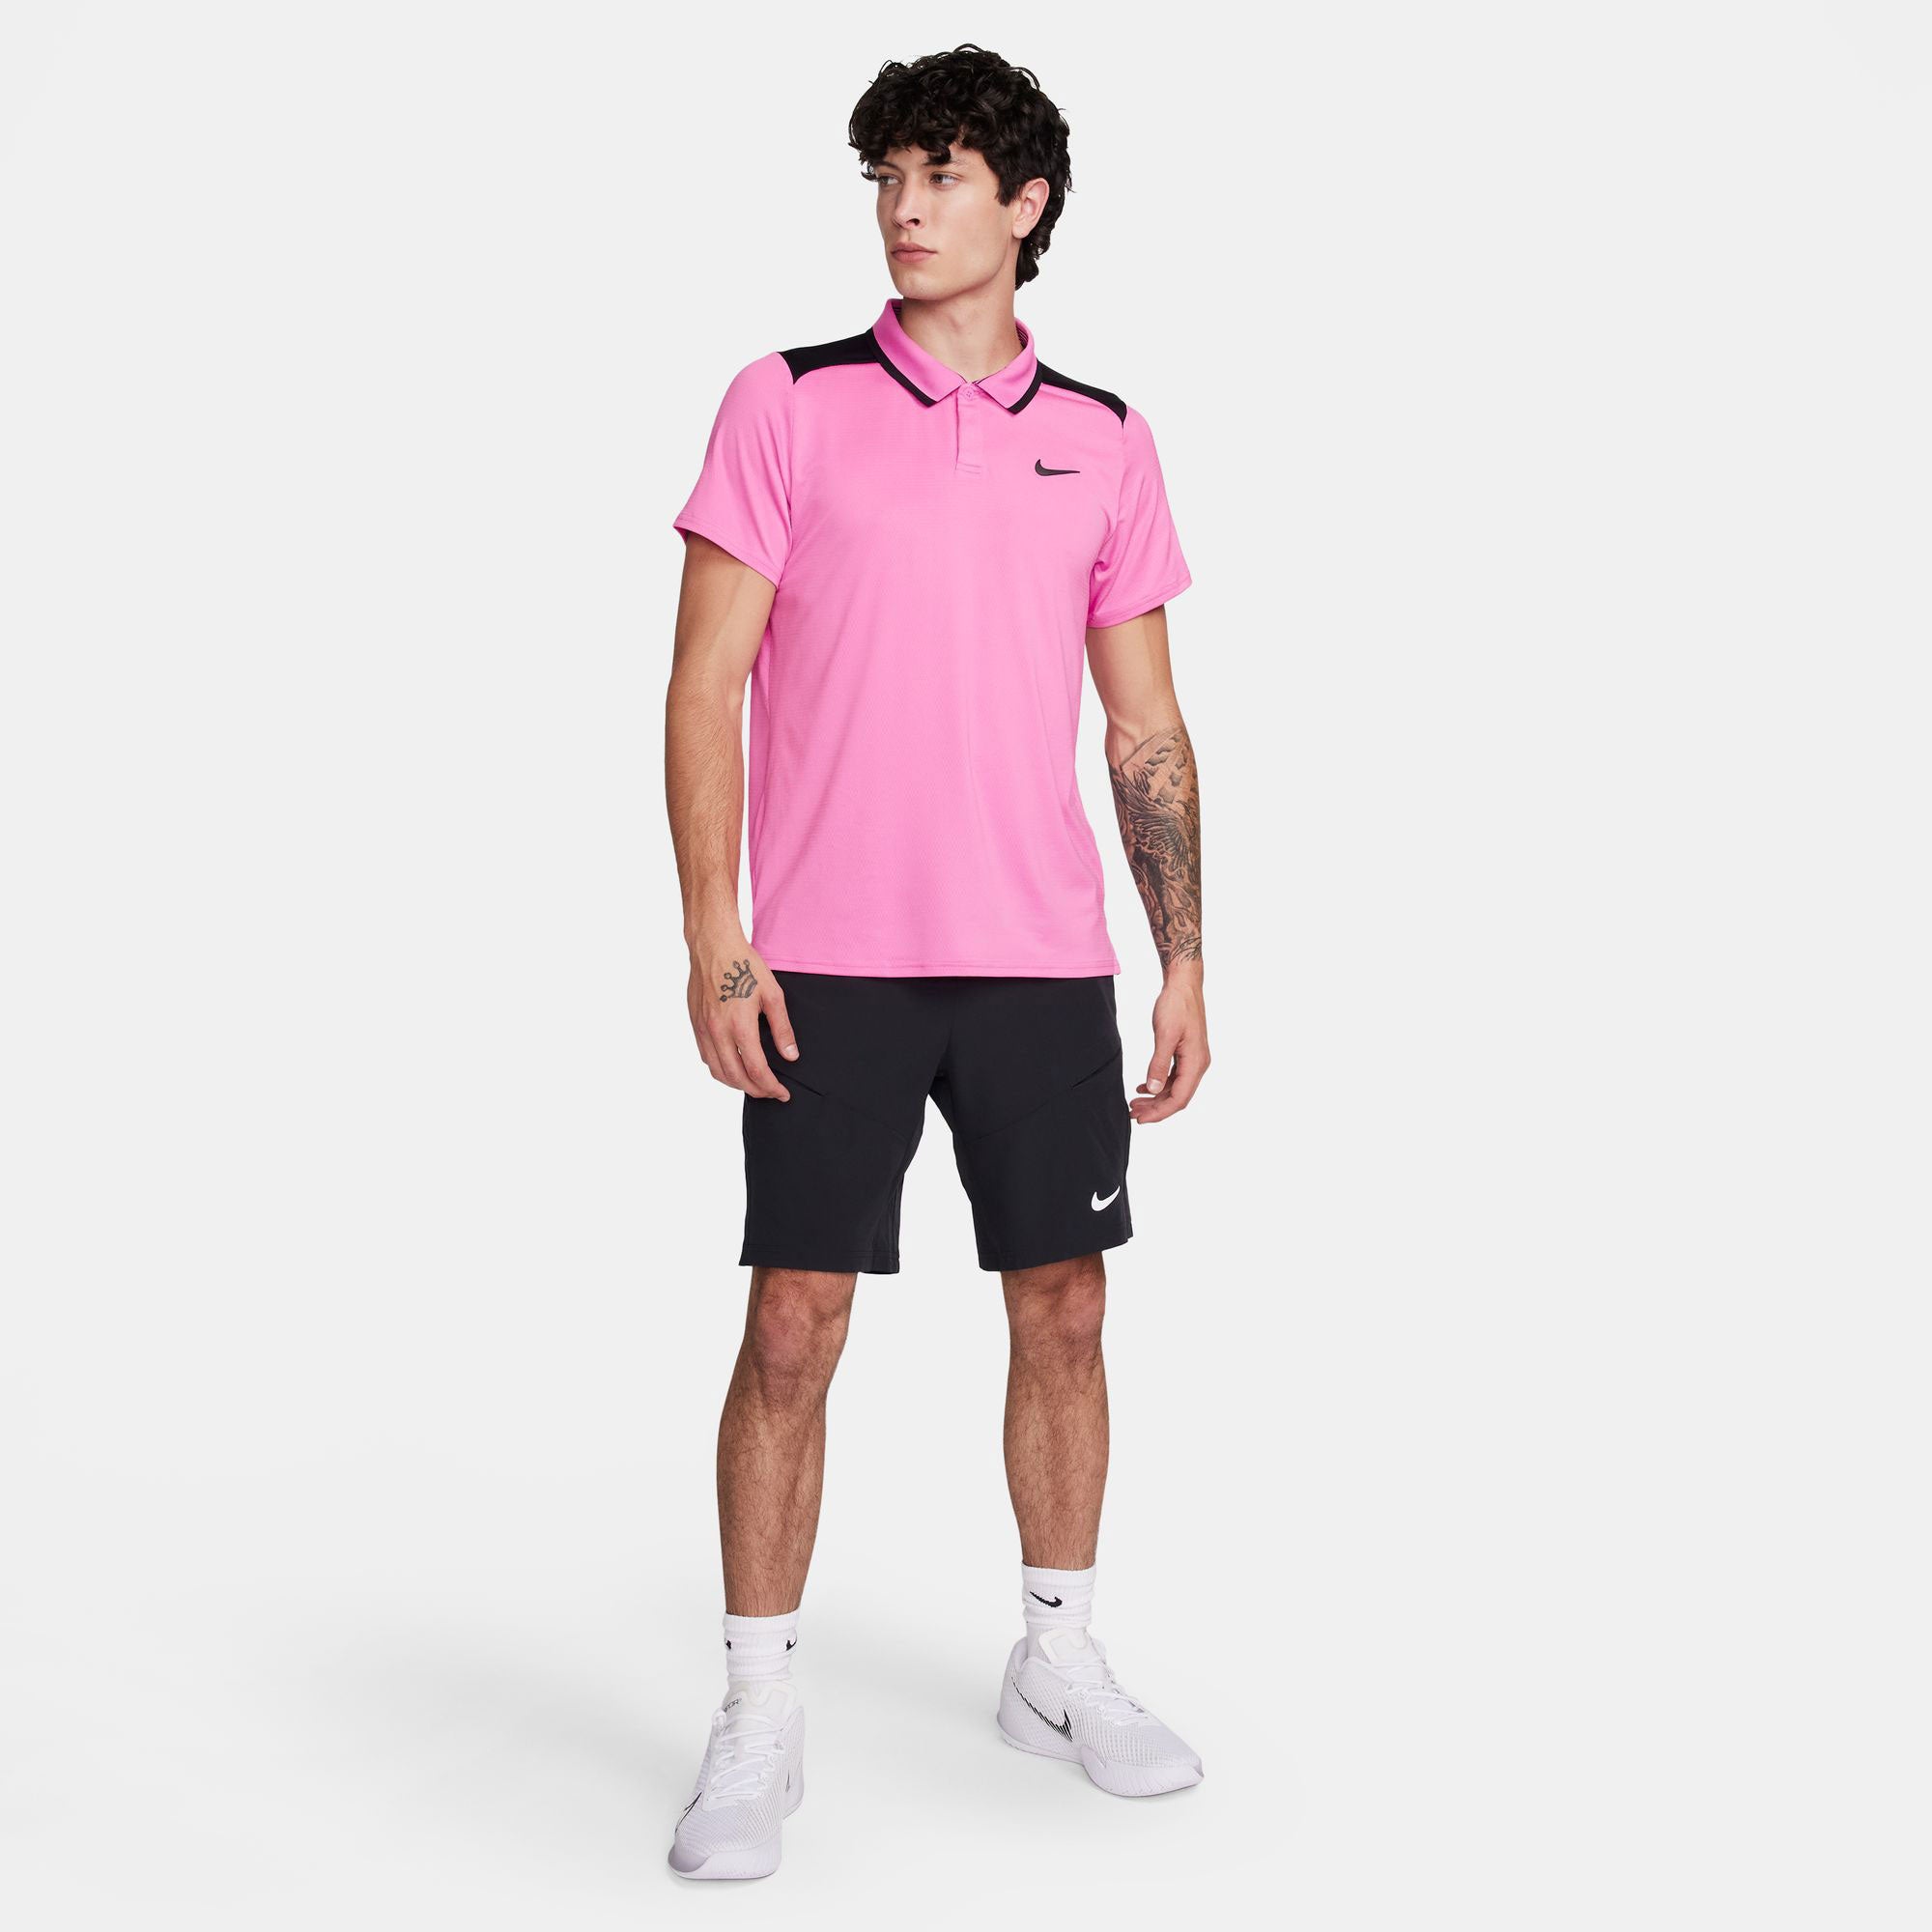 NikeCourt Advantage Men's Dri-FIT Tennis Polo - Pink (6)